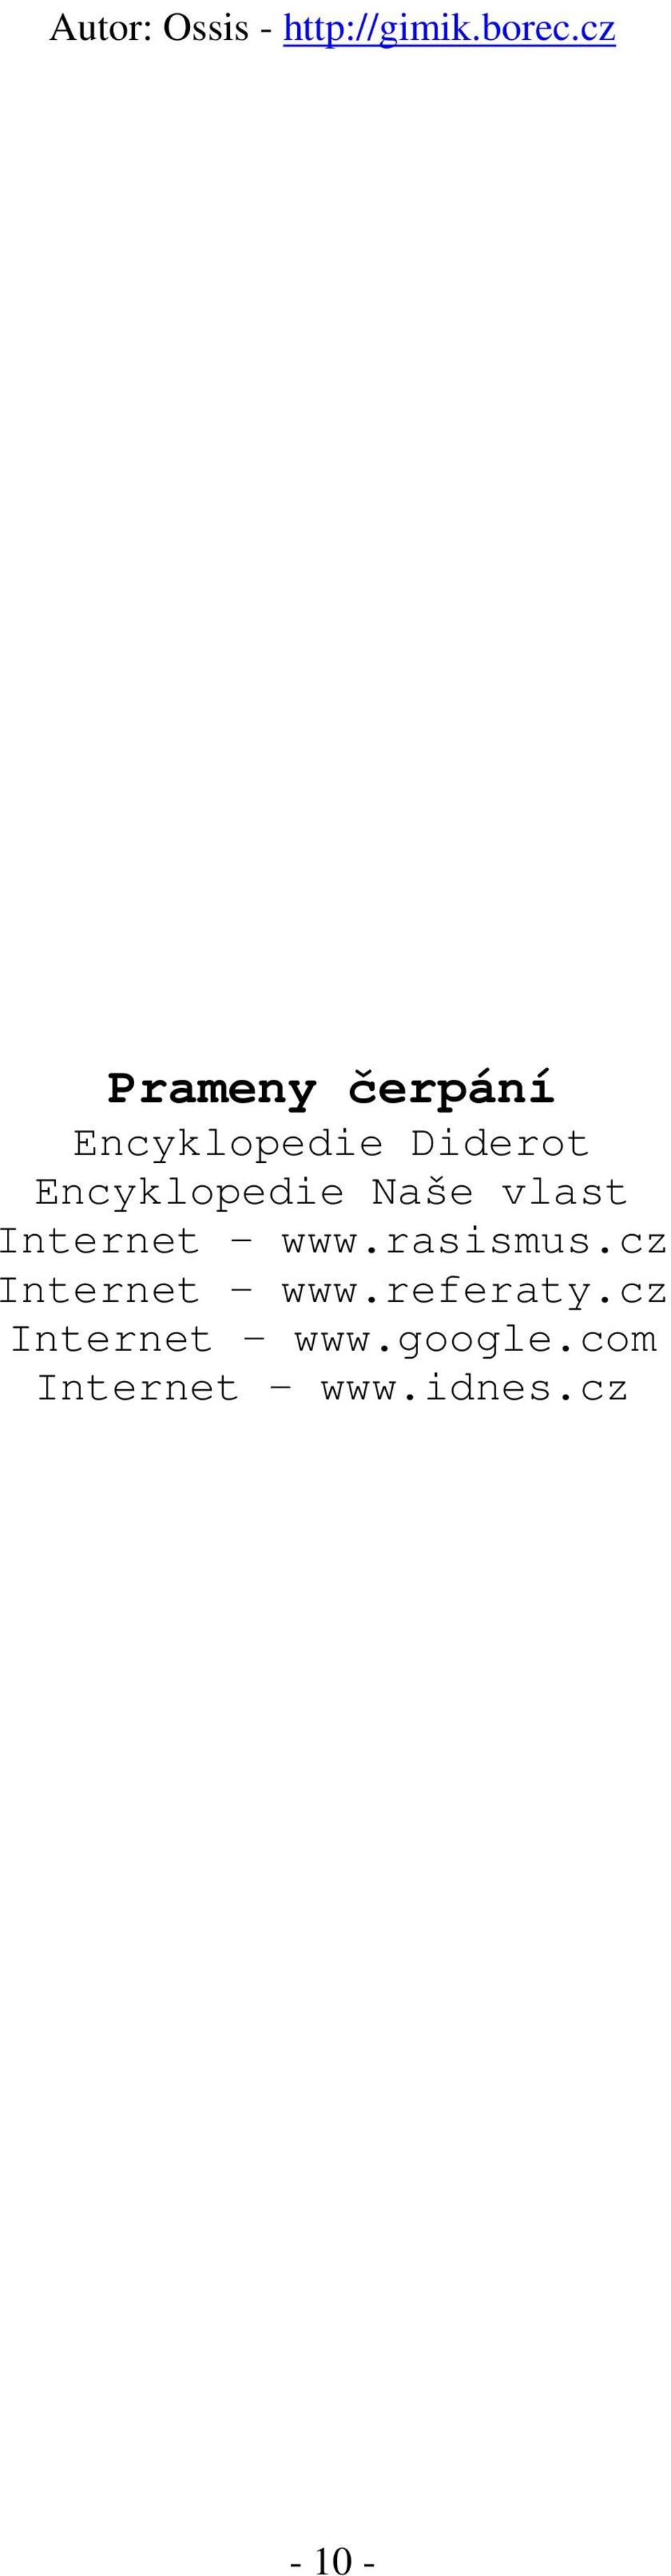 rasismus.cz Internet www.referaty.